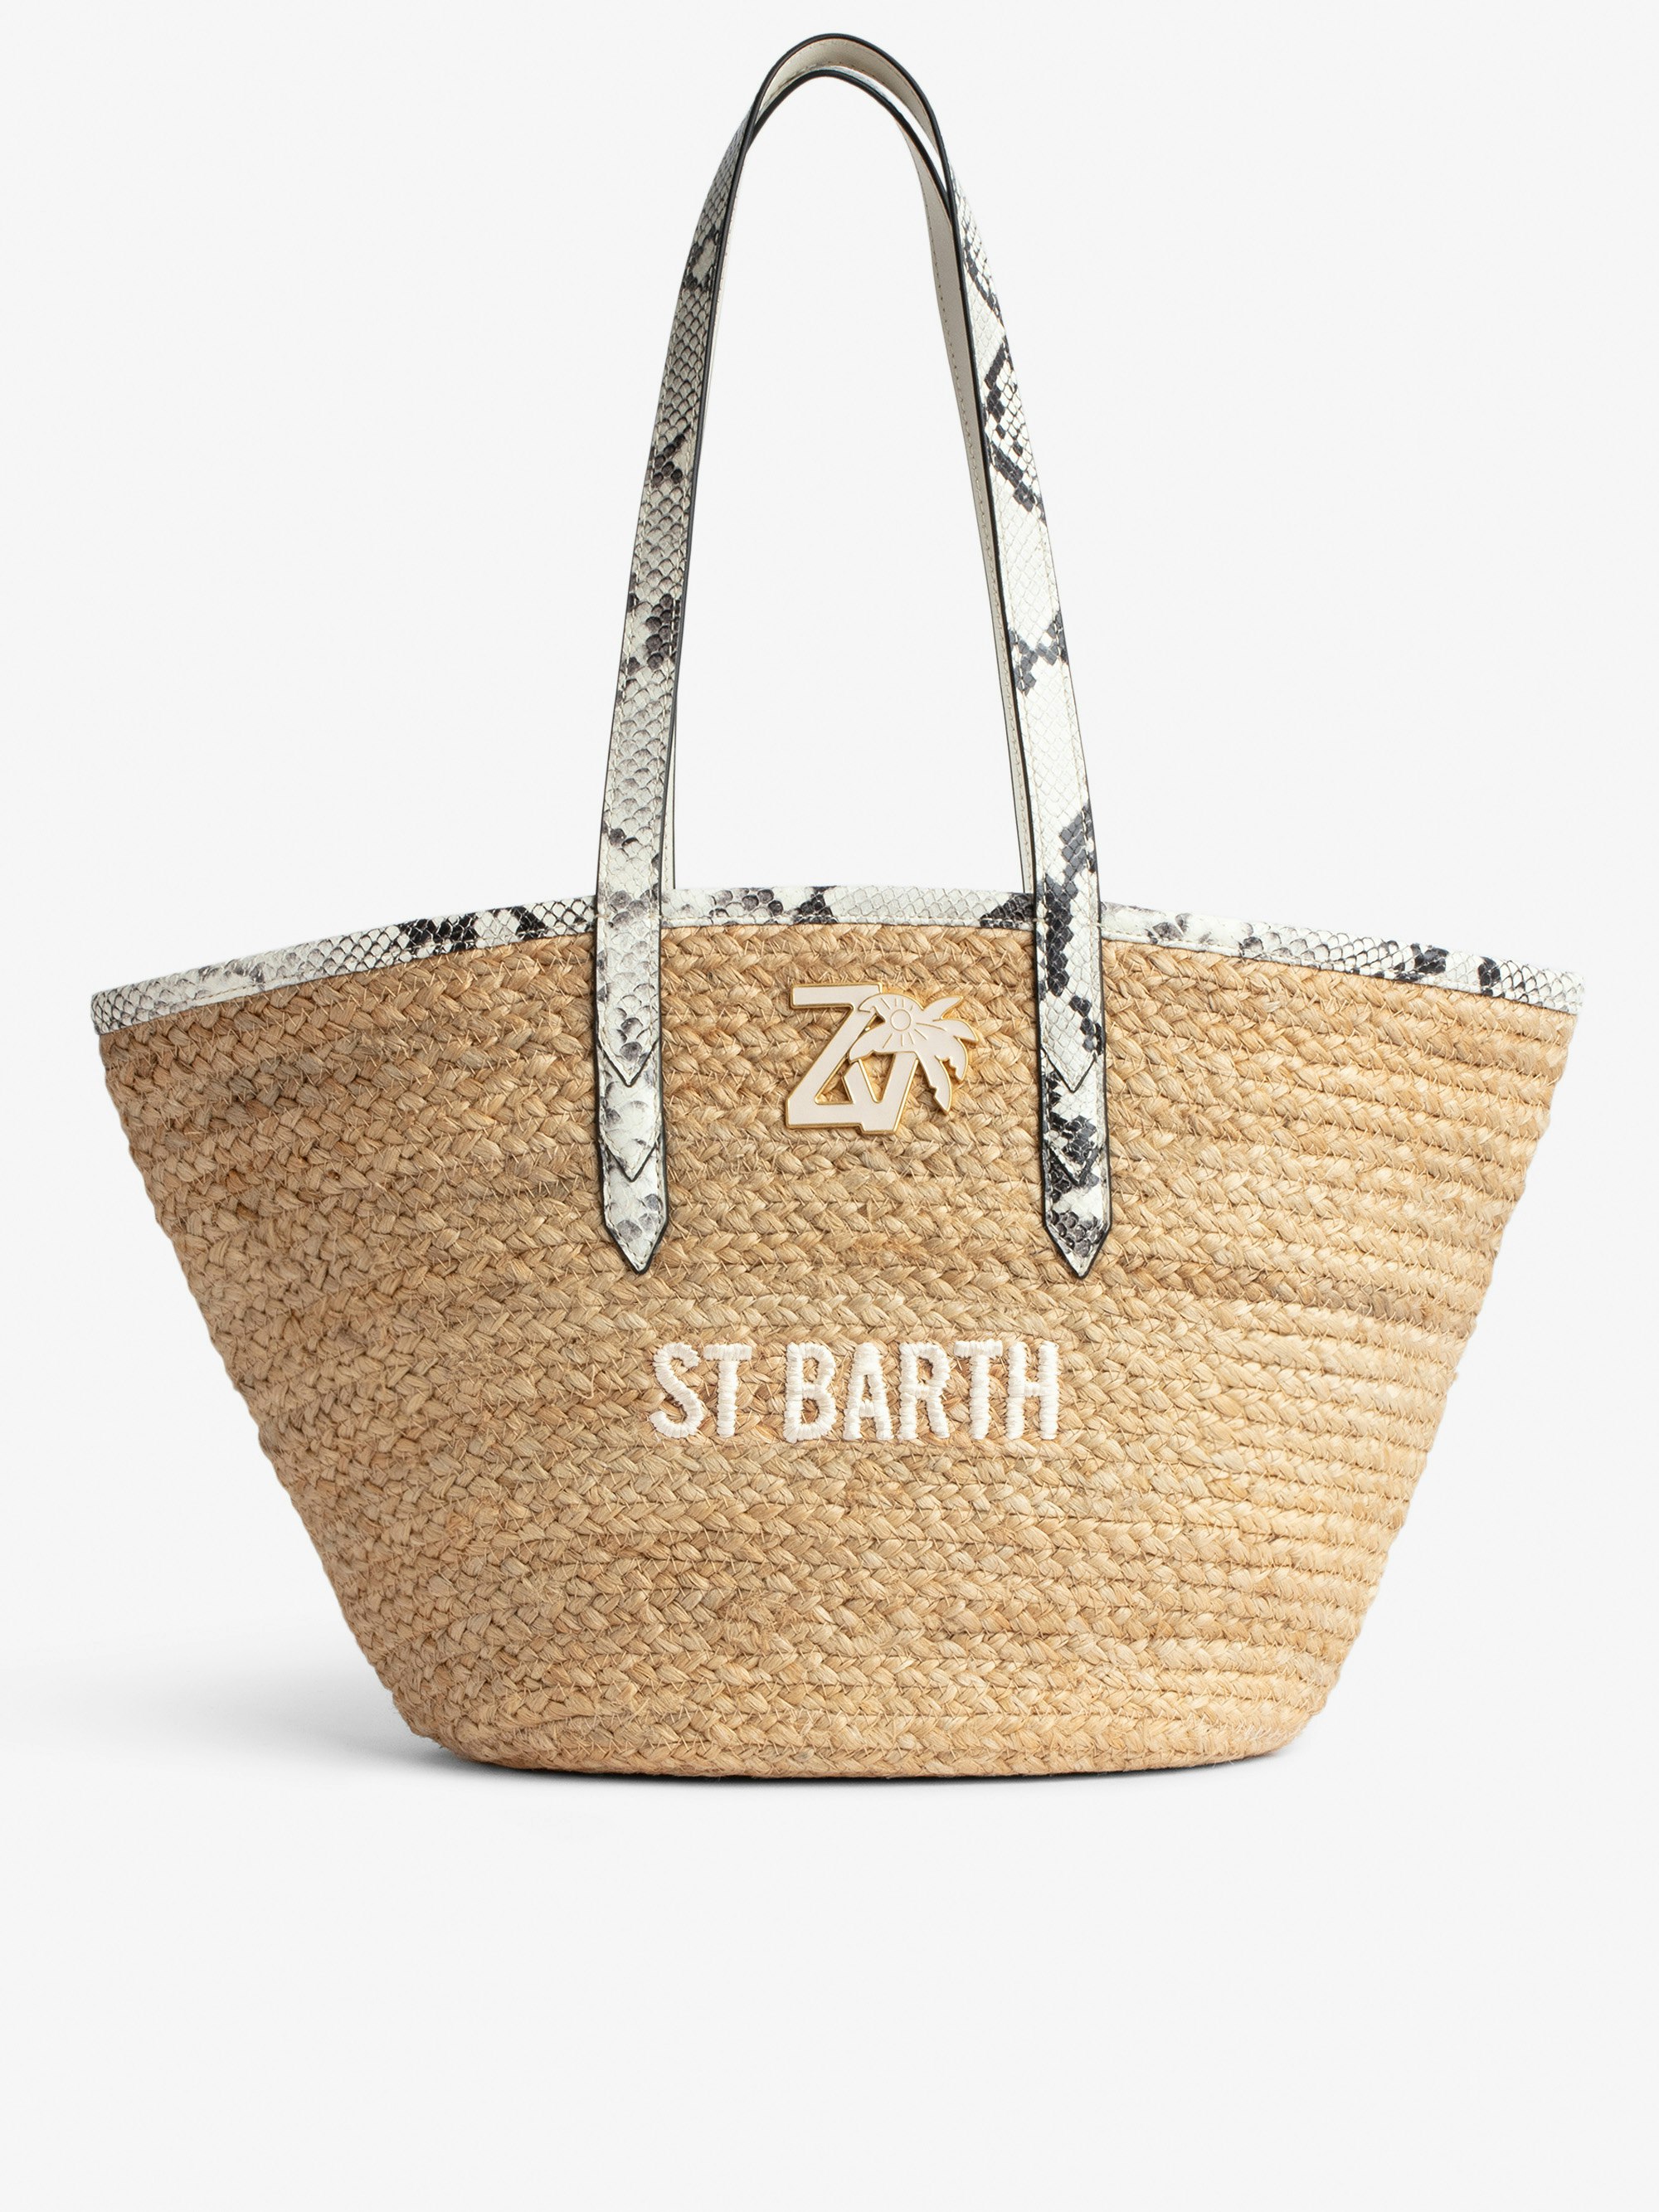 Borsa Le Beach Bag - Borsa in paglia con manici in pelle ecru effetto pitone, con ricamo "St Barth" e impreziosita da un charm ZV - Donna